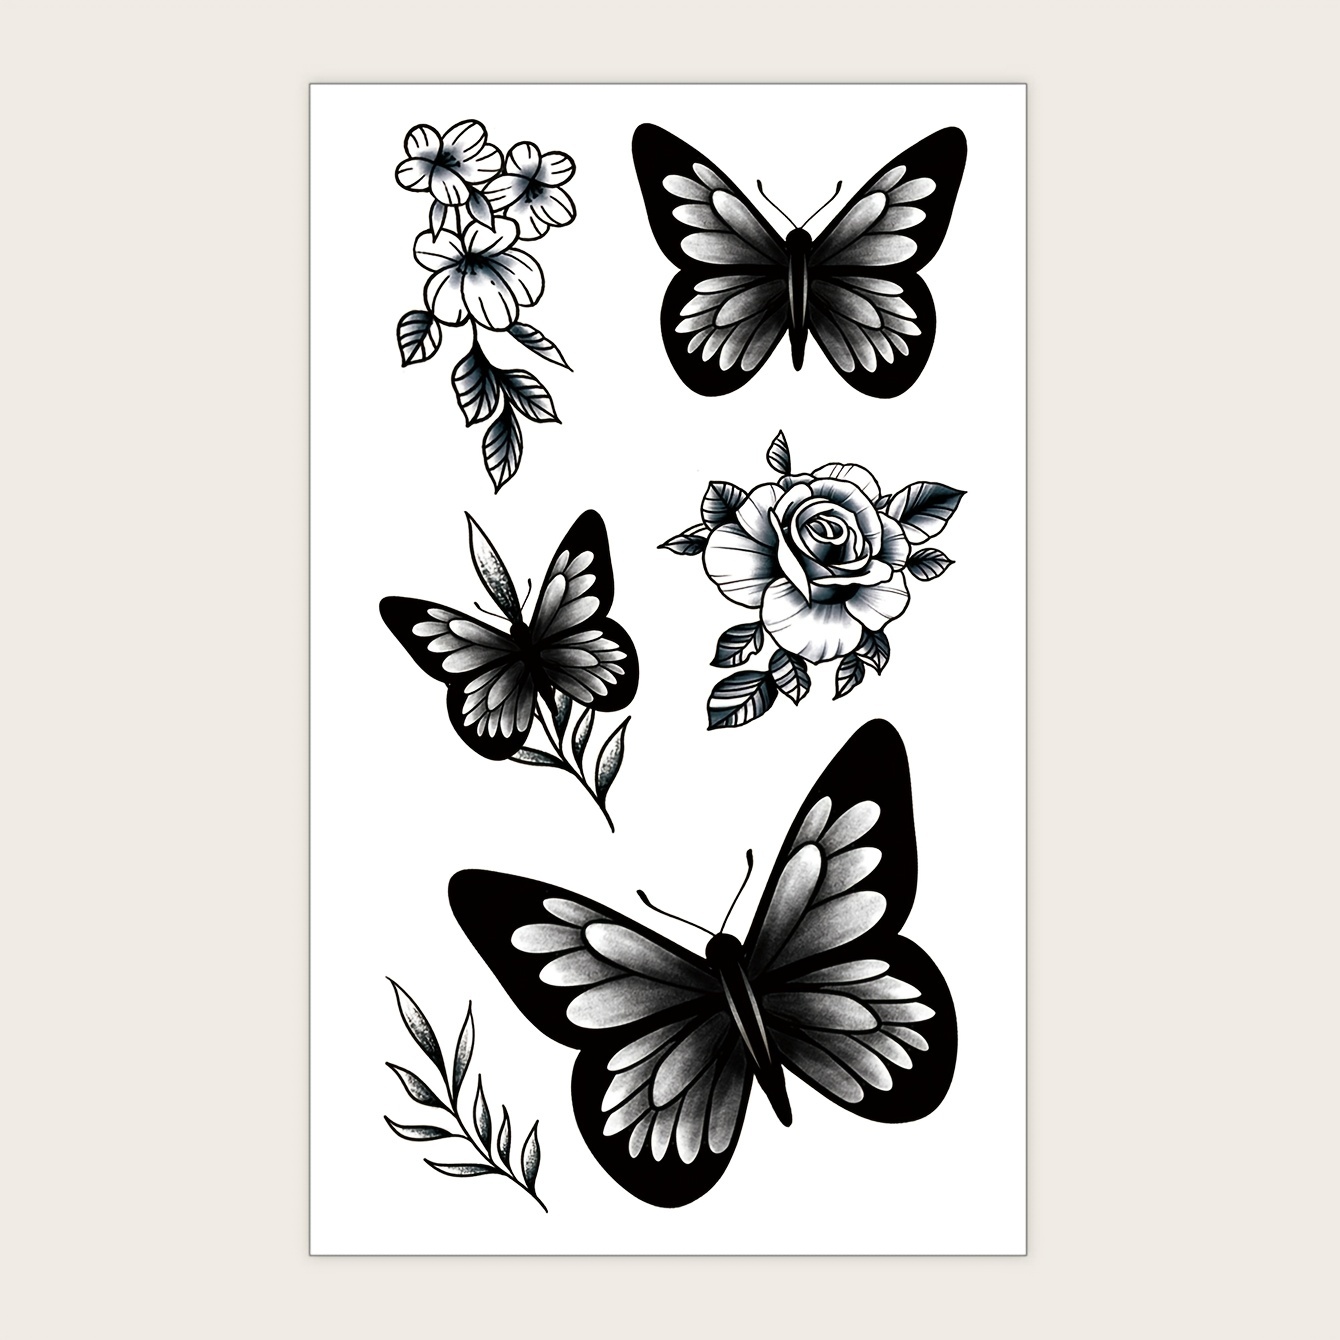 Borboleta flores tatuagem temporária adesivos para homens mulheres